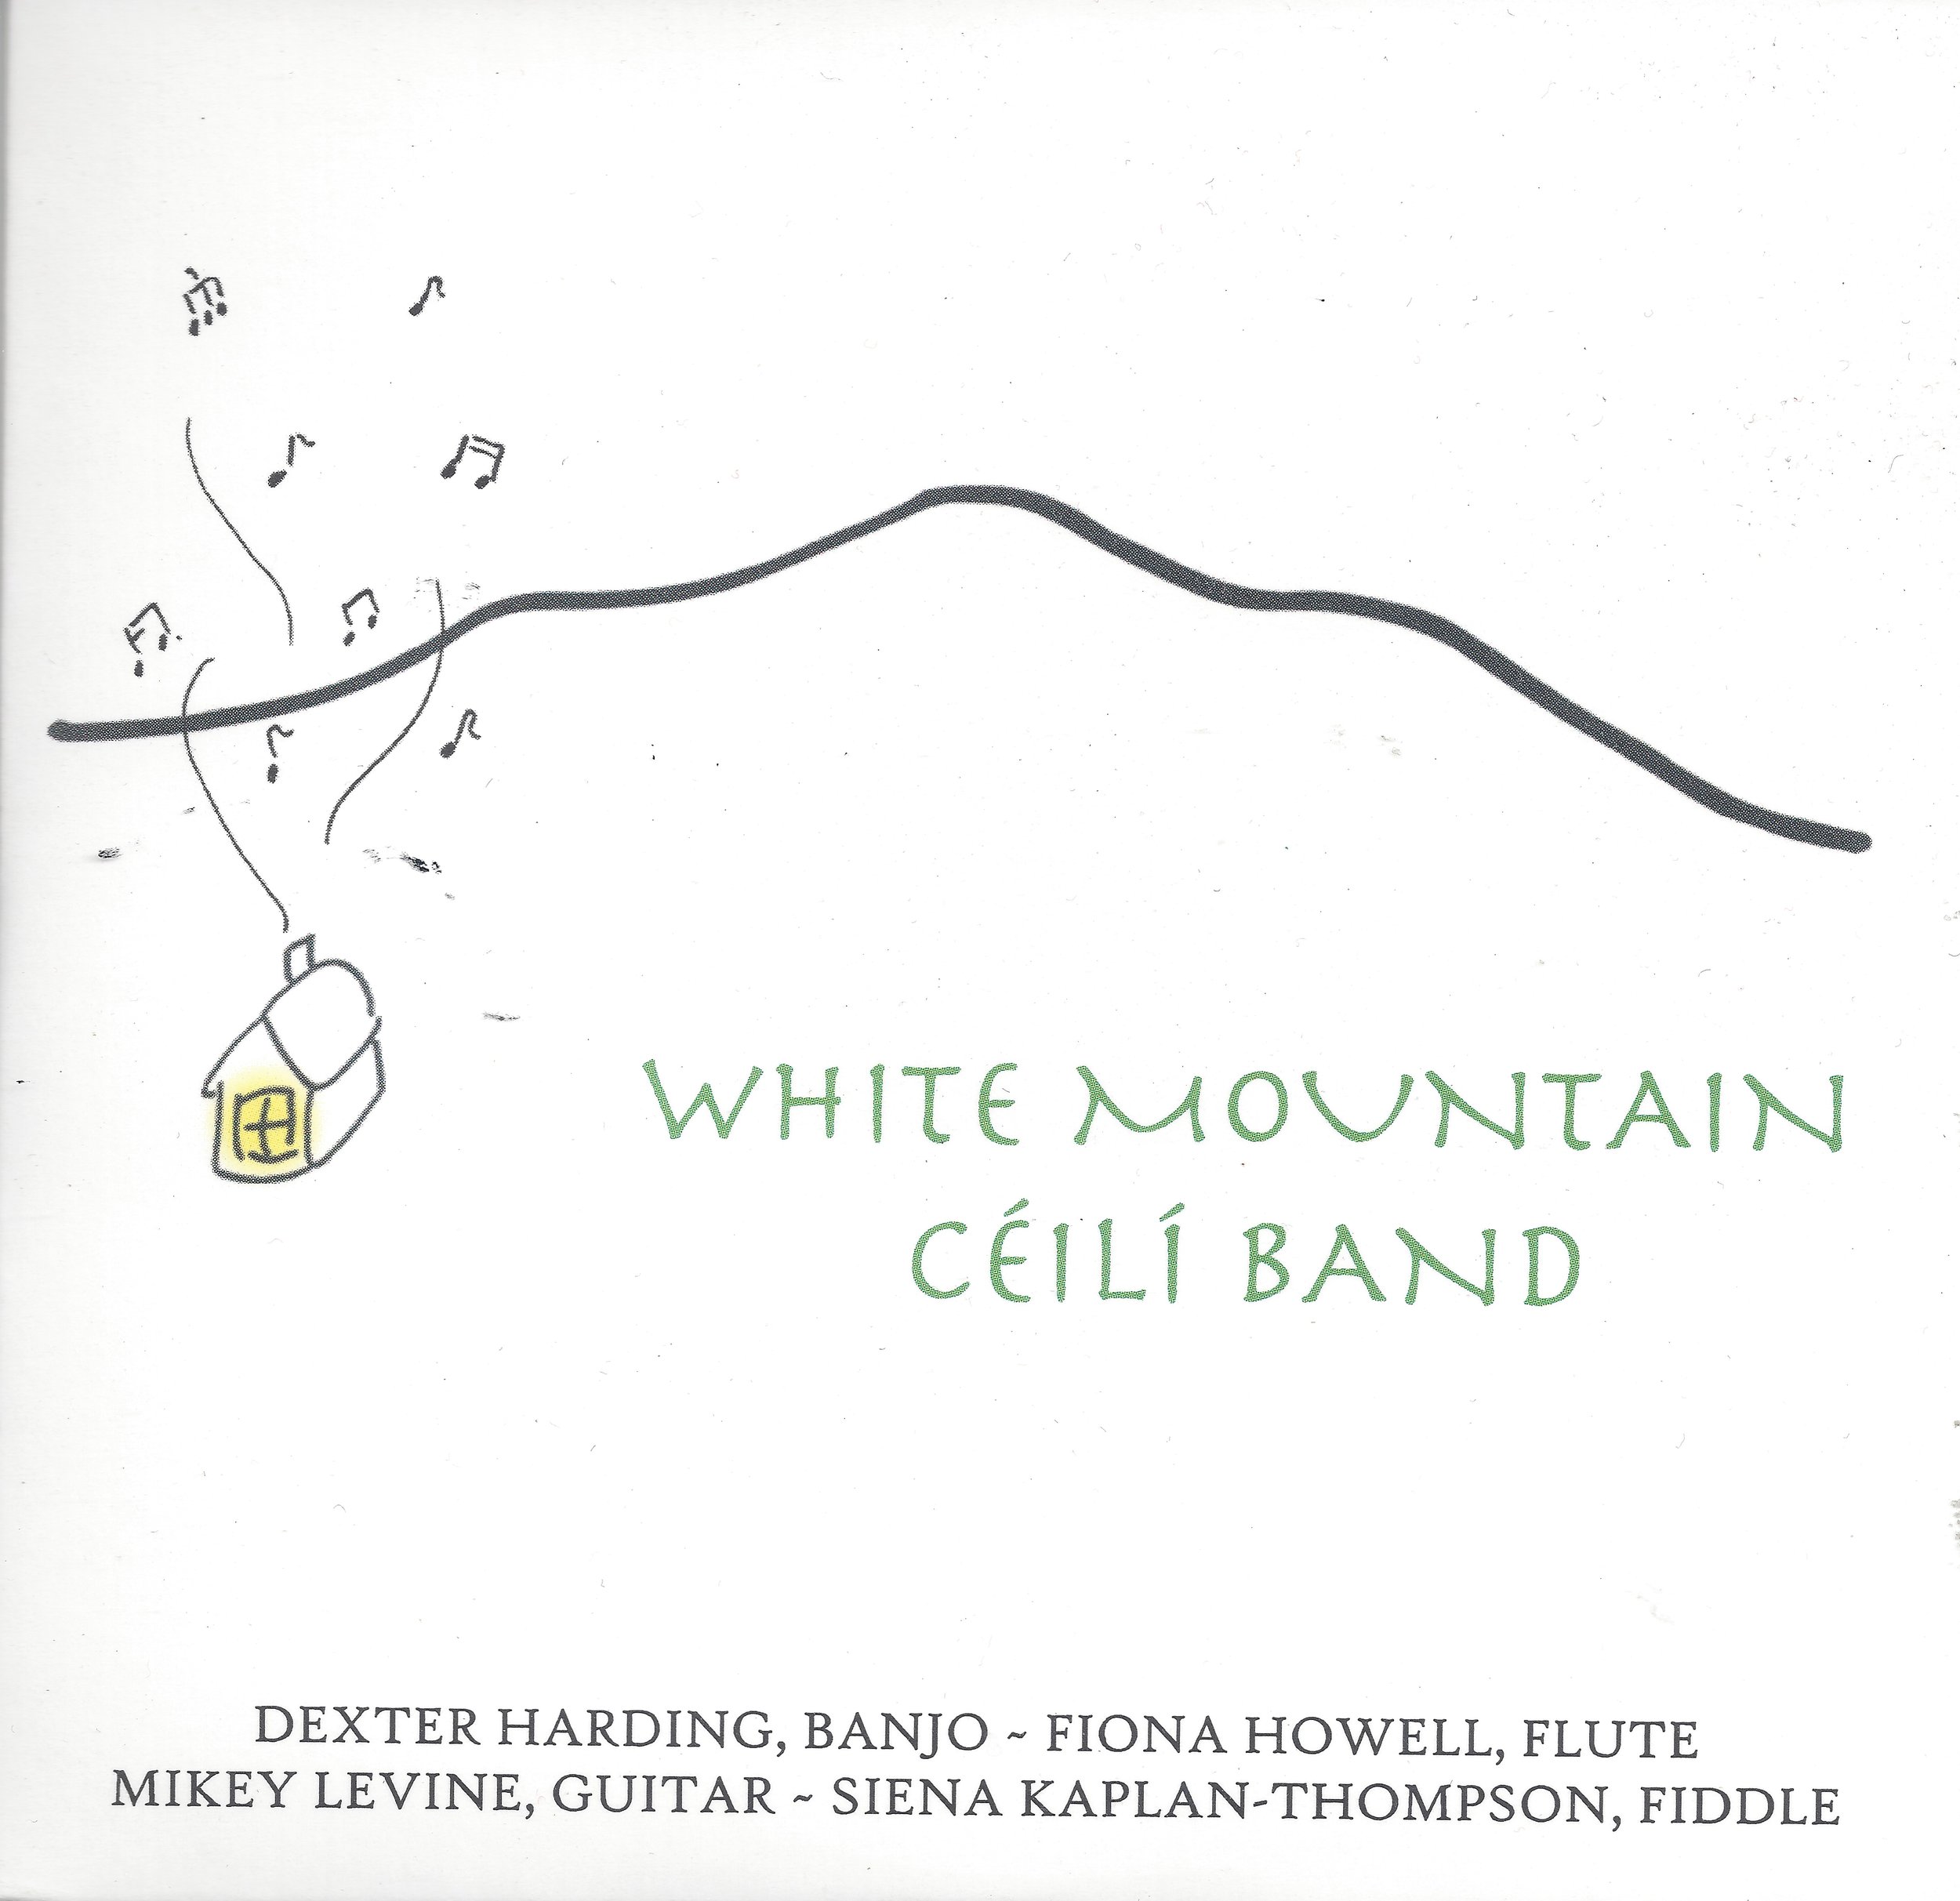 The White Mountain Céilí Band